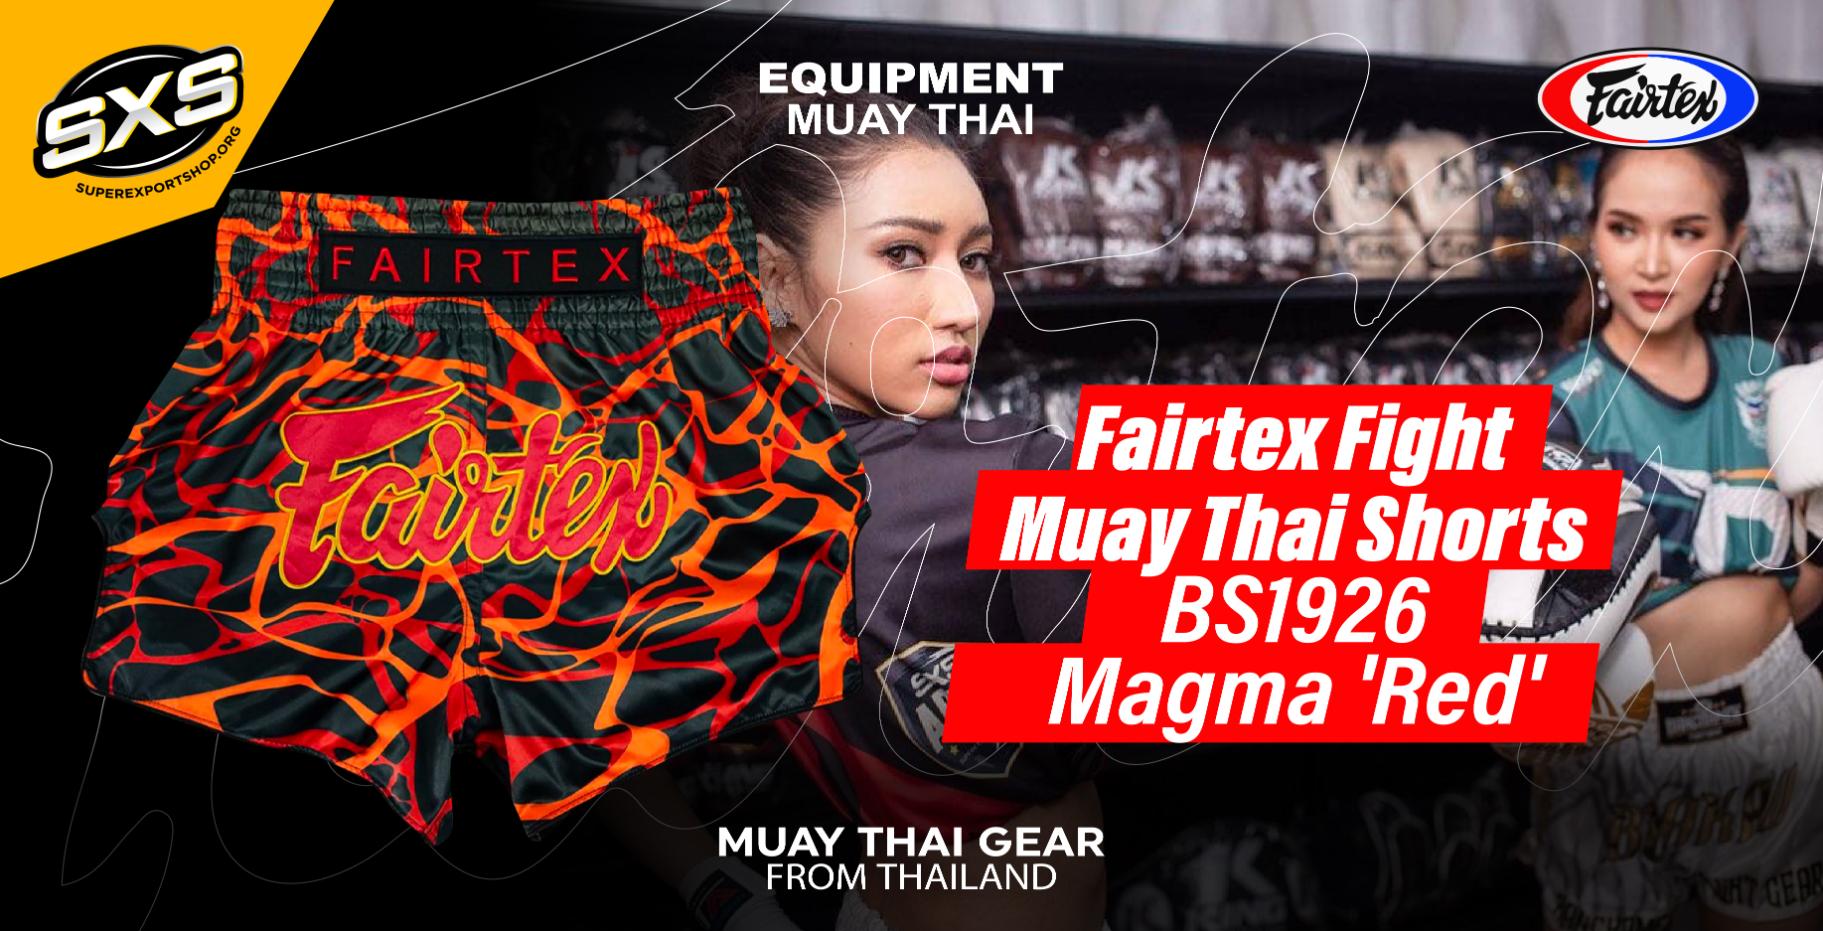 Tienda de Muay Thai  Comprar material de Muay Thai Fightbrand